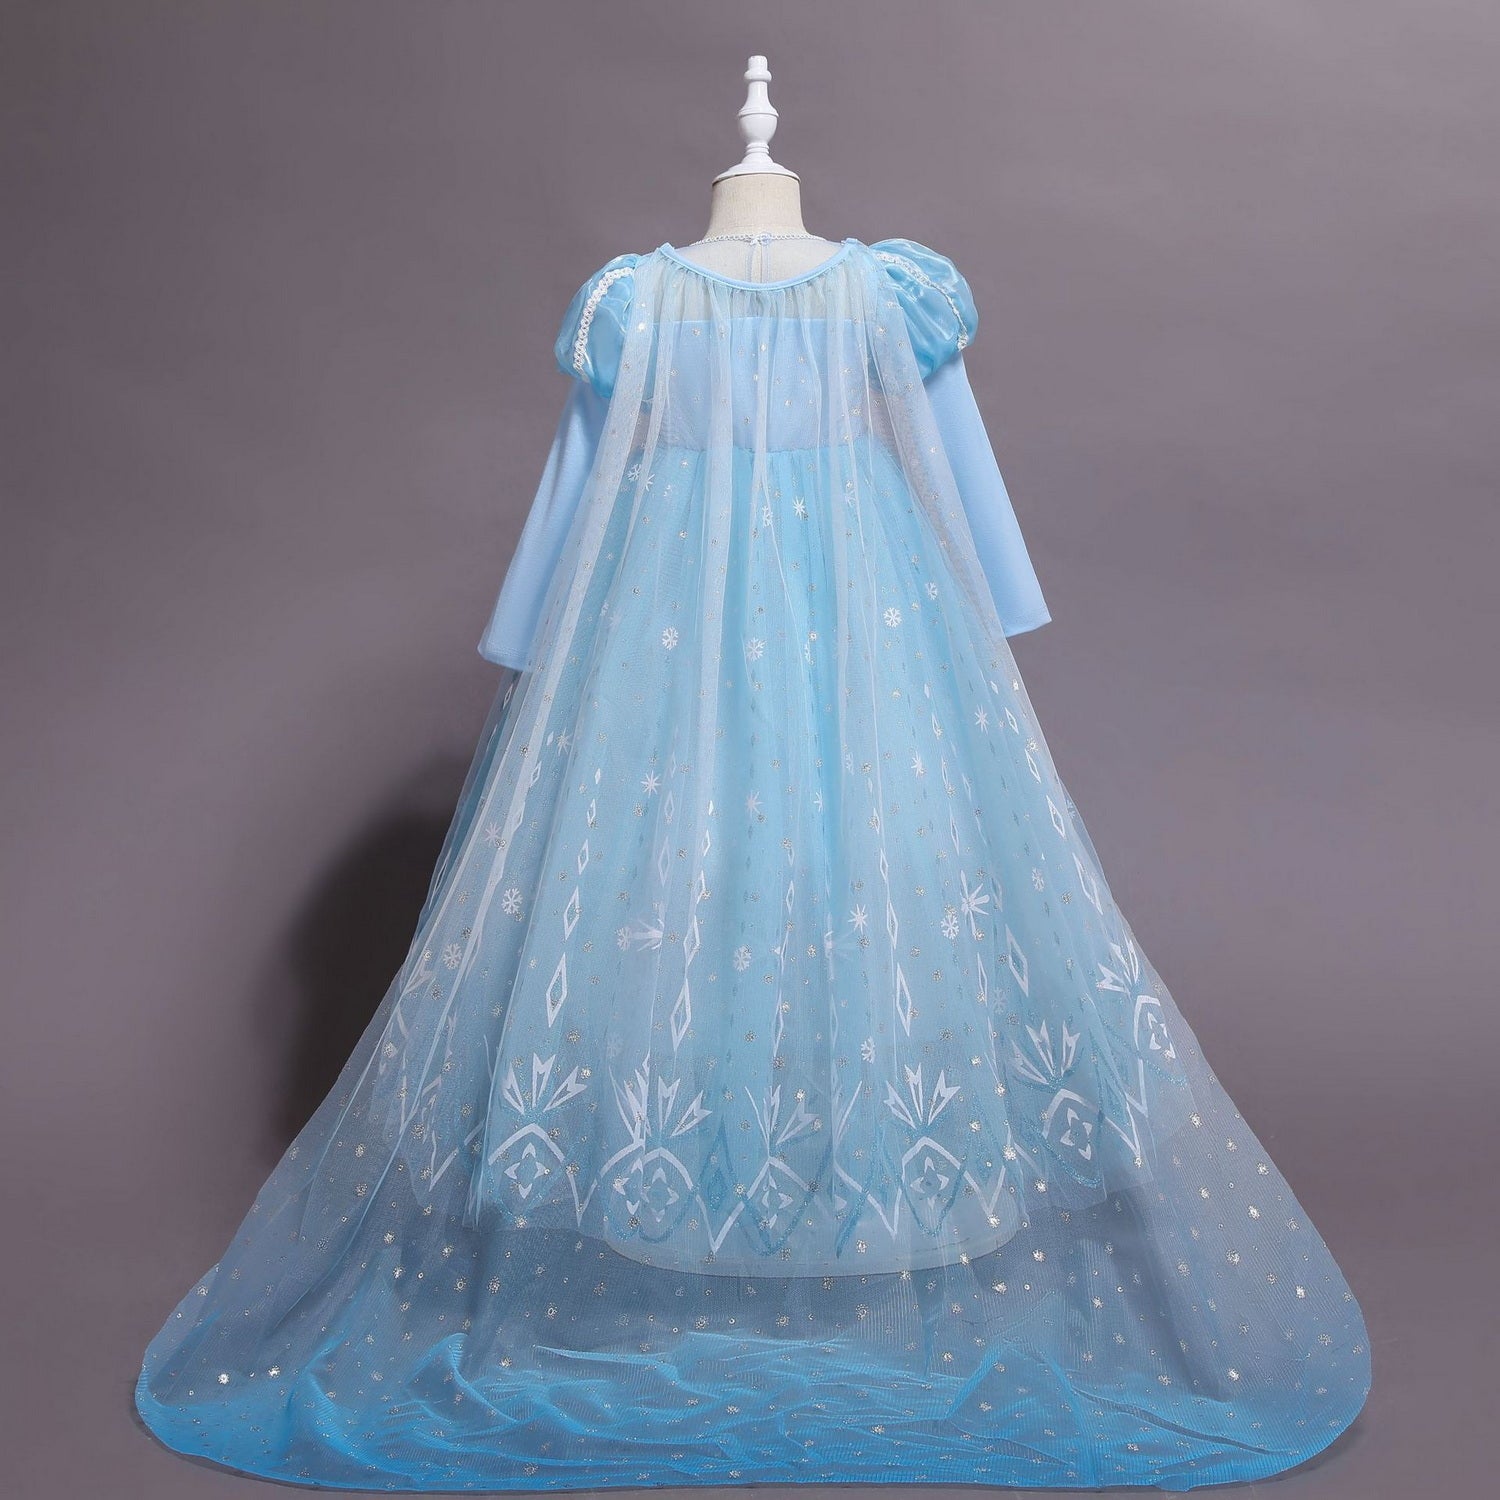 Frozen 2 Dress, Frozen 2 Inspired White Dress, Frozen Elsa Dress Girls, Frozen  Dress Toddlers, Kids Cosplay, Handmade Dress, Princess Dress - Etsy India